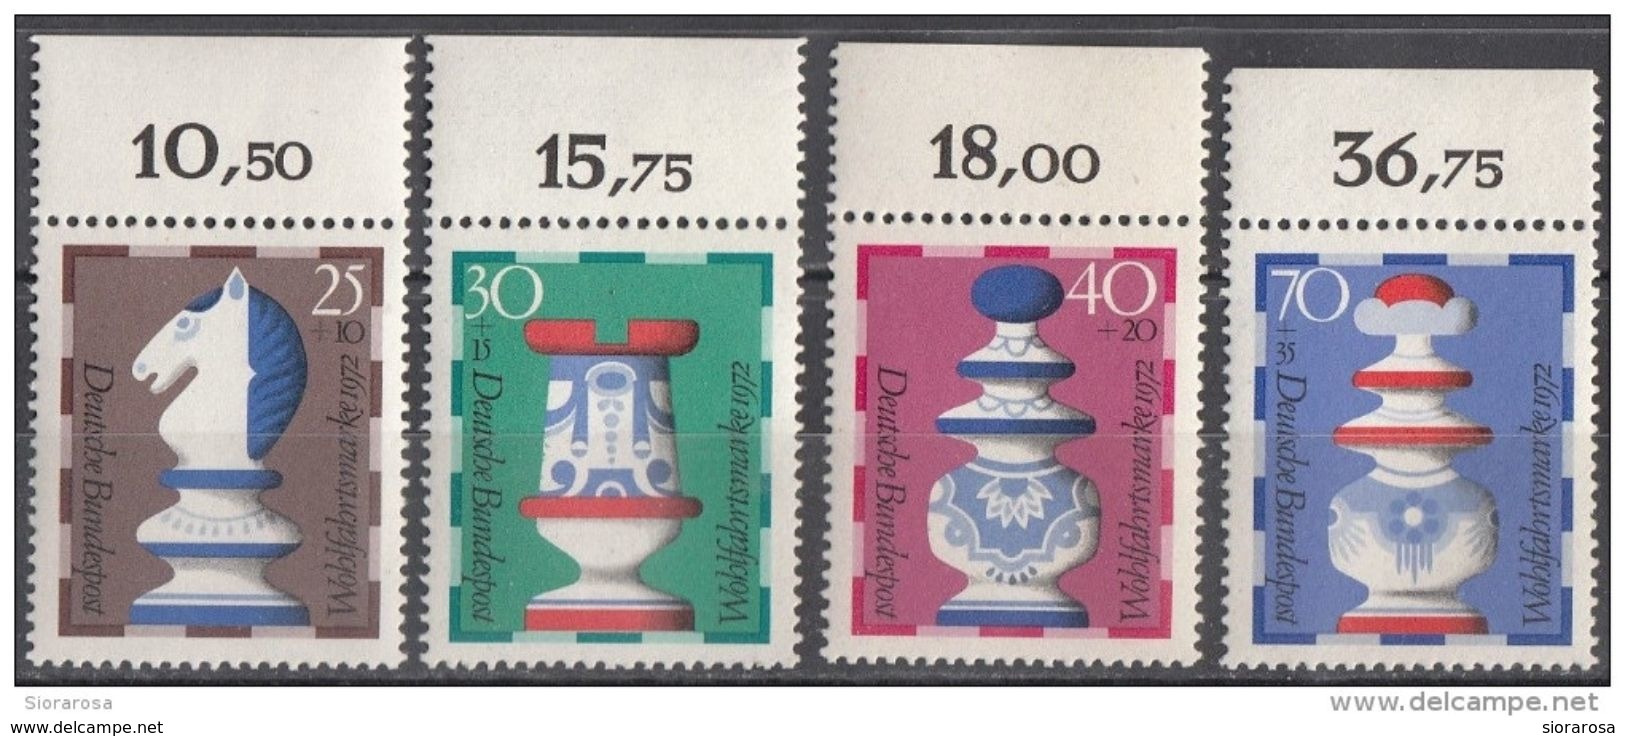 B491 Germania 1972   Chess Scacchi Knight Nuovo MNH Serie Completa Deutsche Bundespost - Scacchi